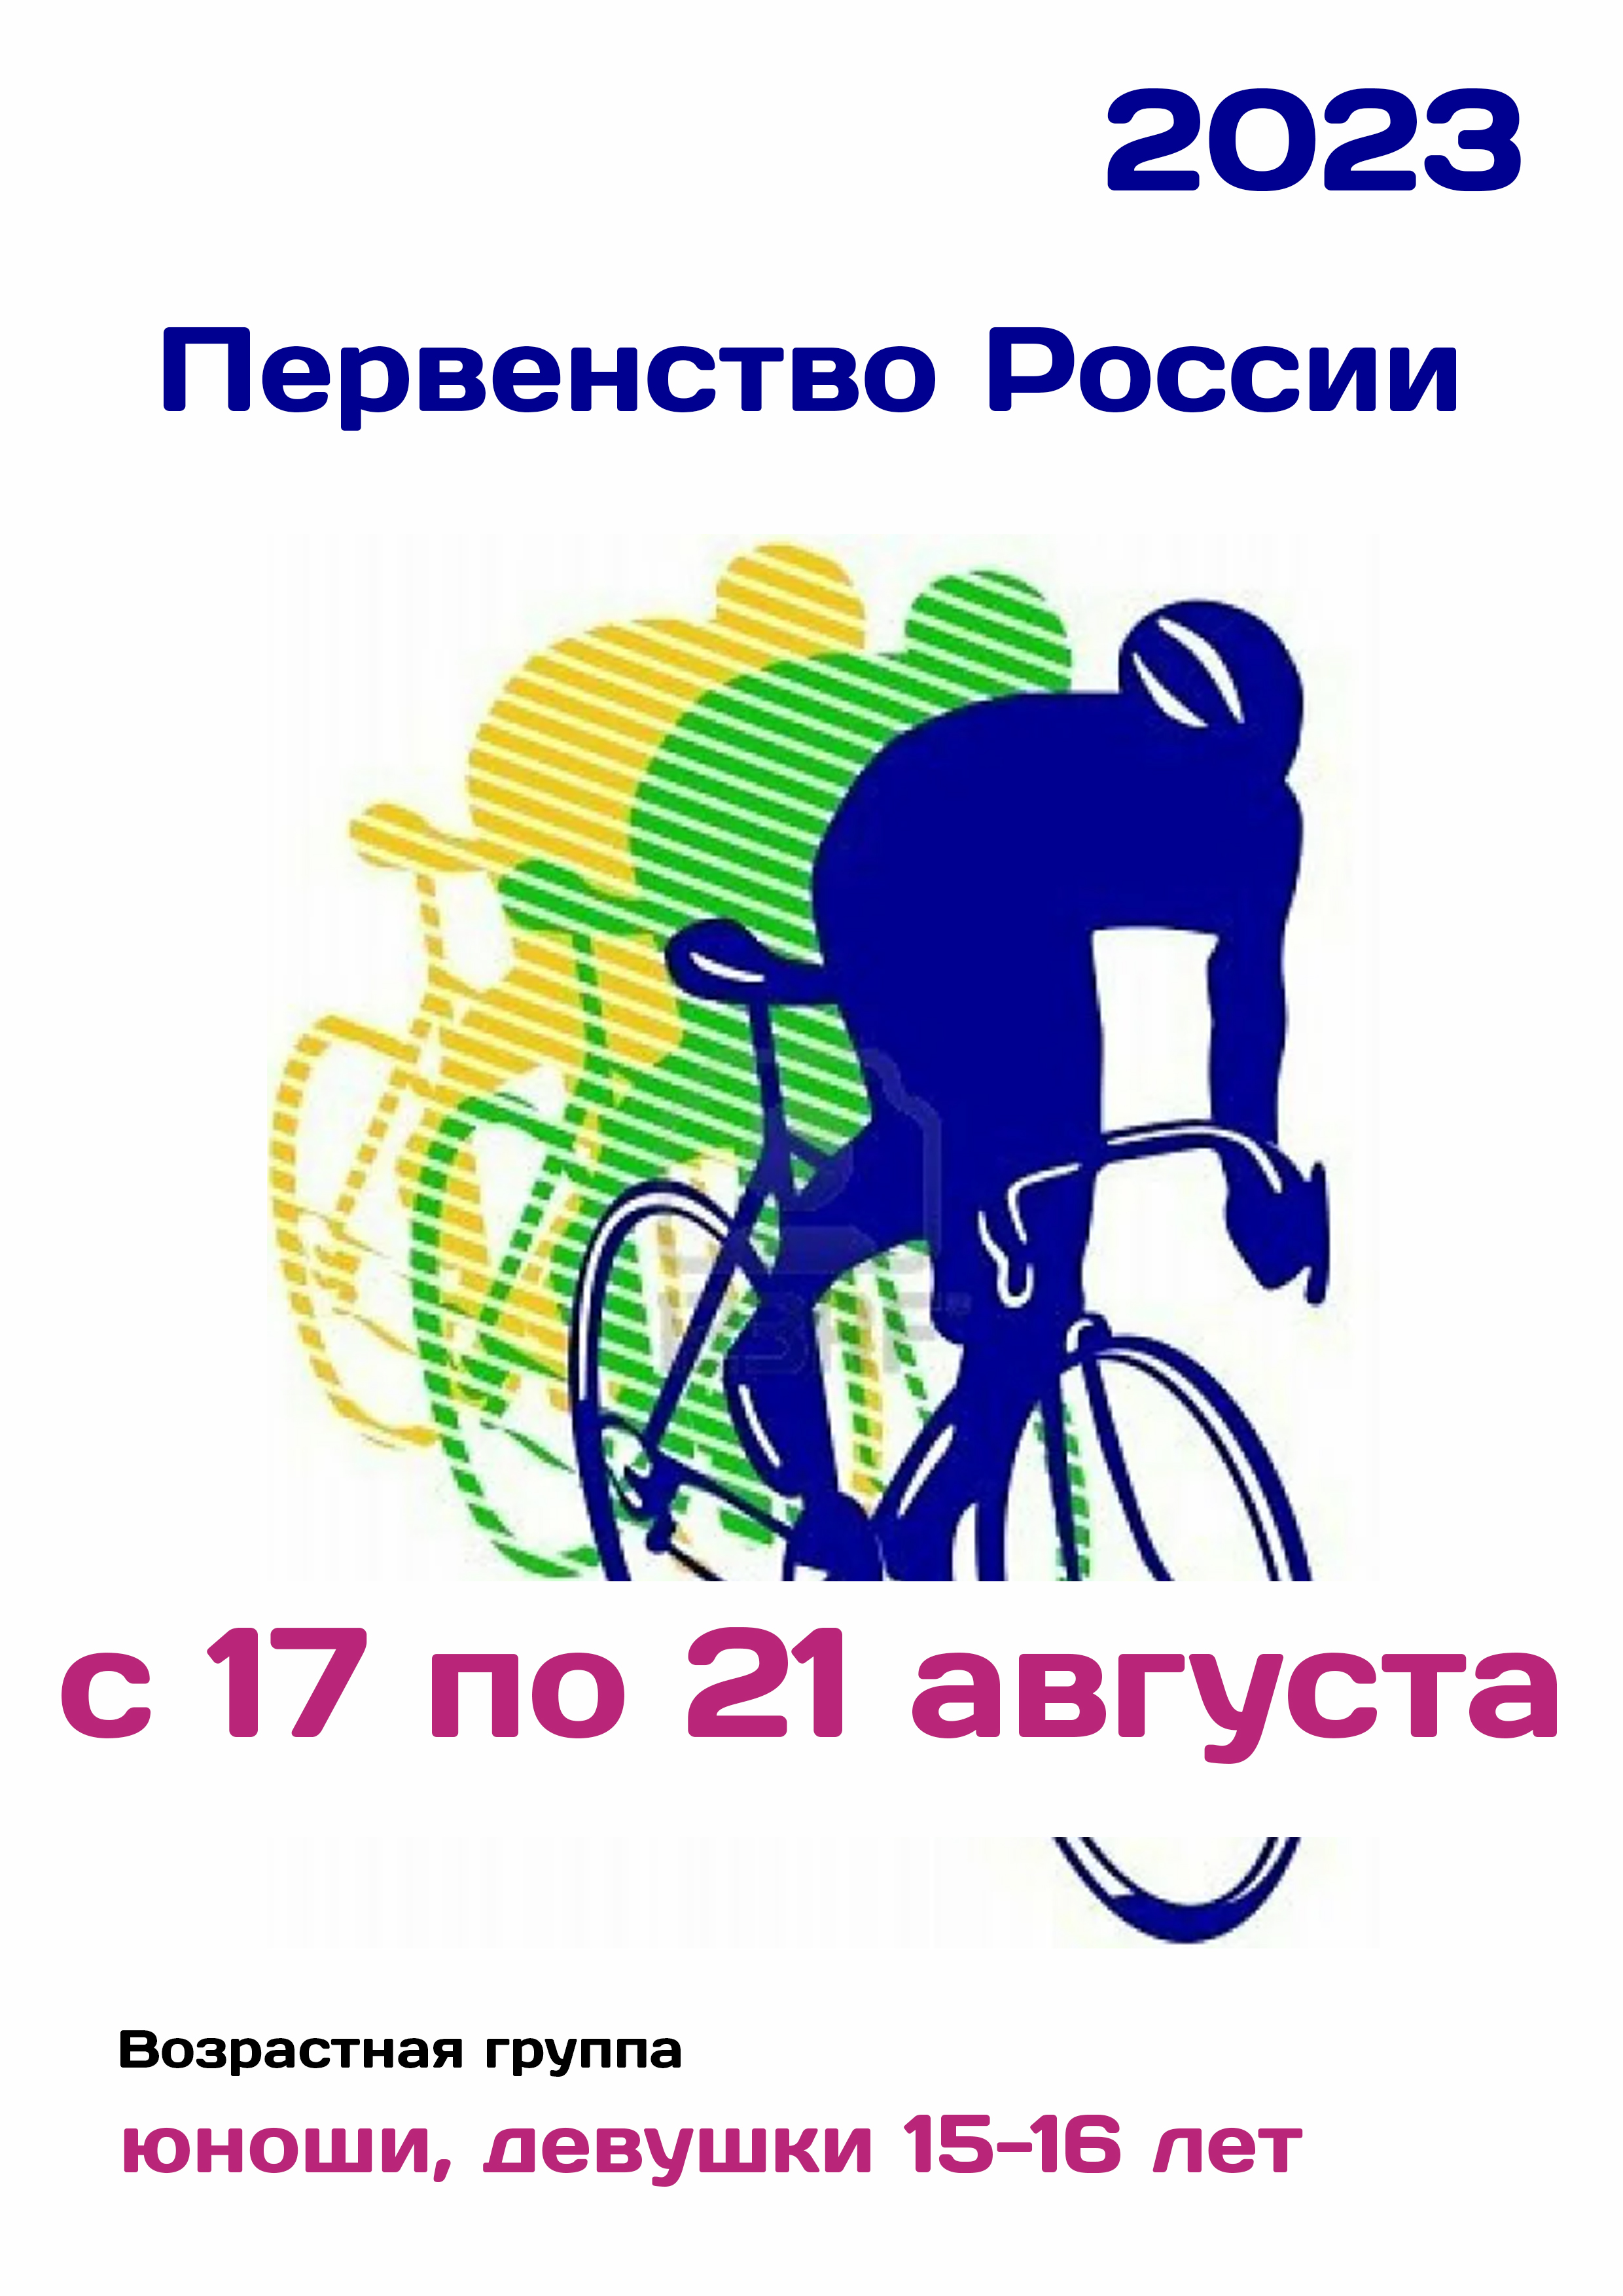 Первенство России по велоспорту 17  agost
 2023  any
 